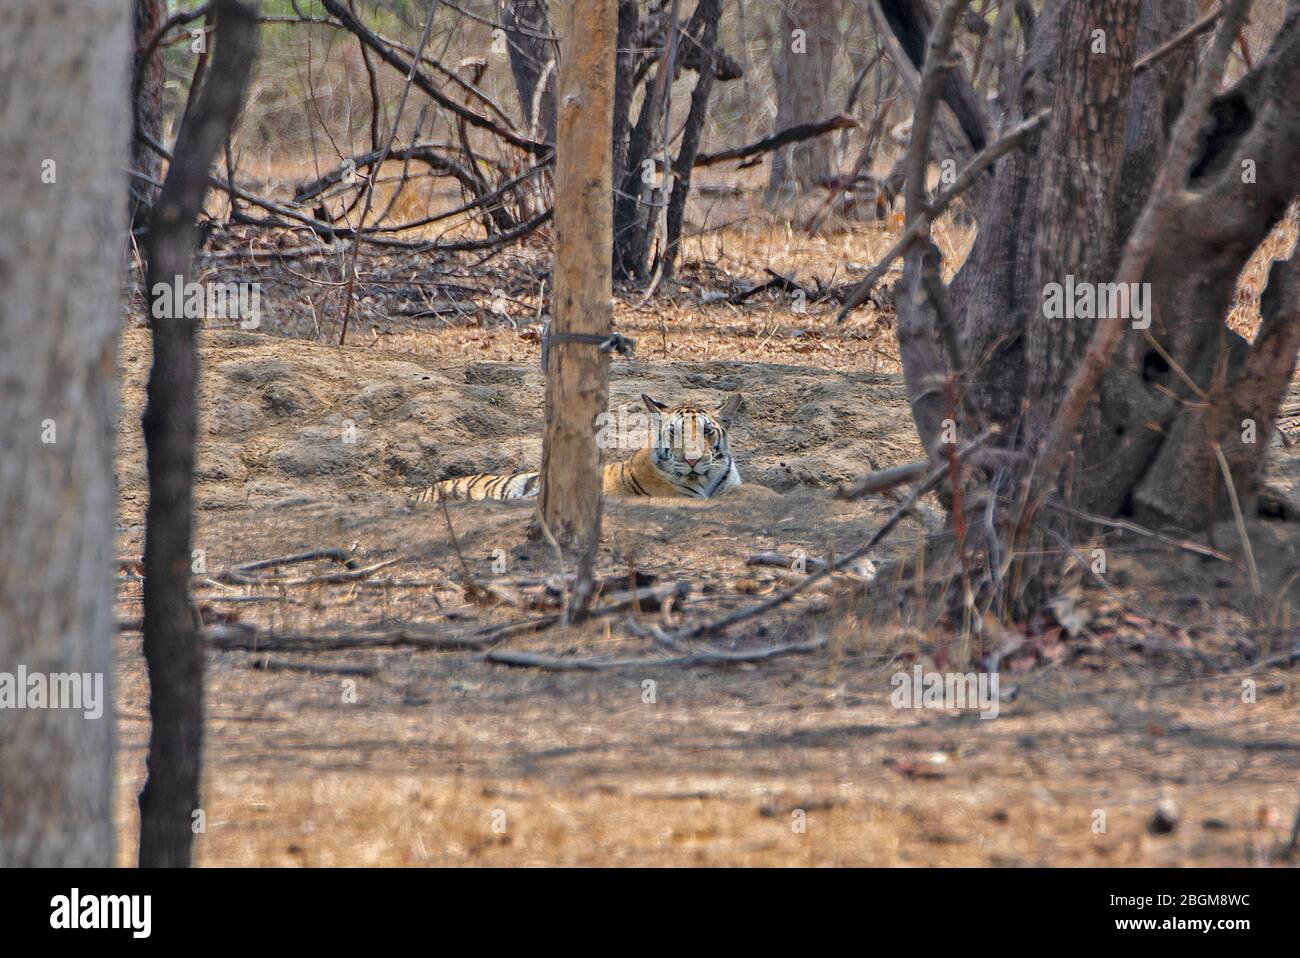 A Tiger cub resting at Pench National Park, Madhya Pradesh, India Stock Photo